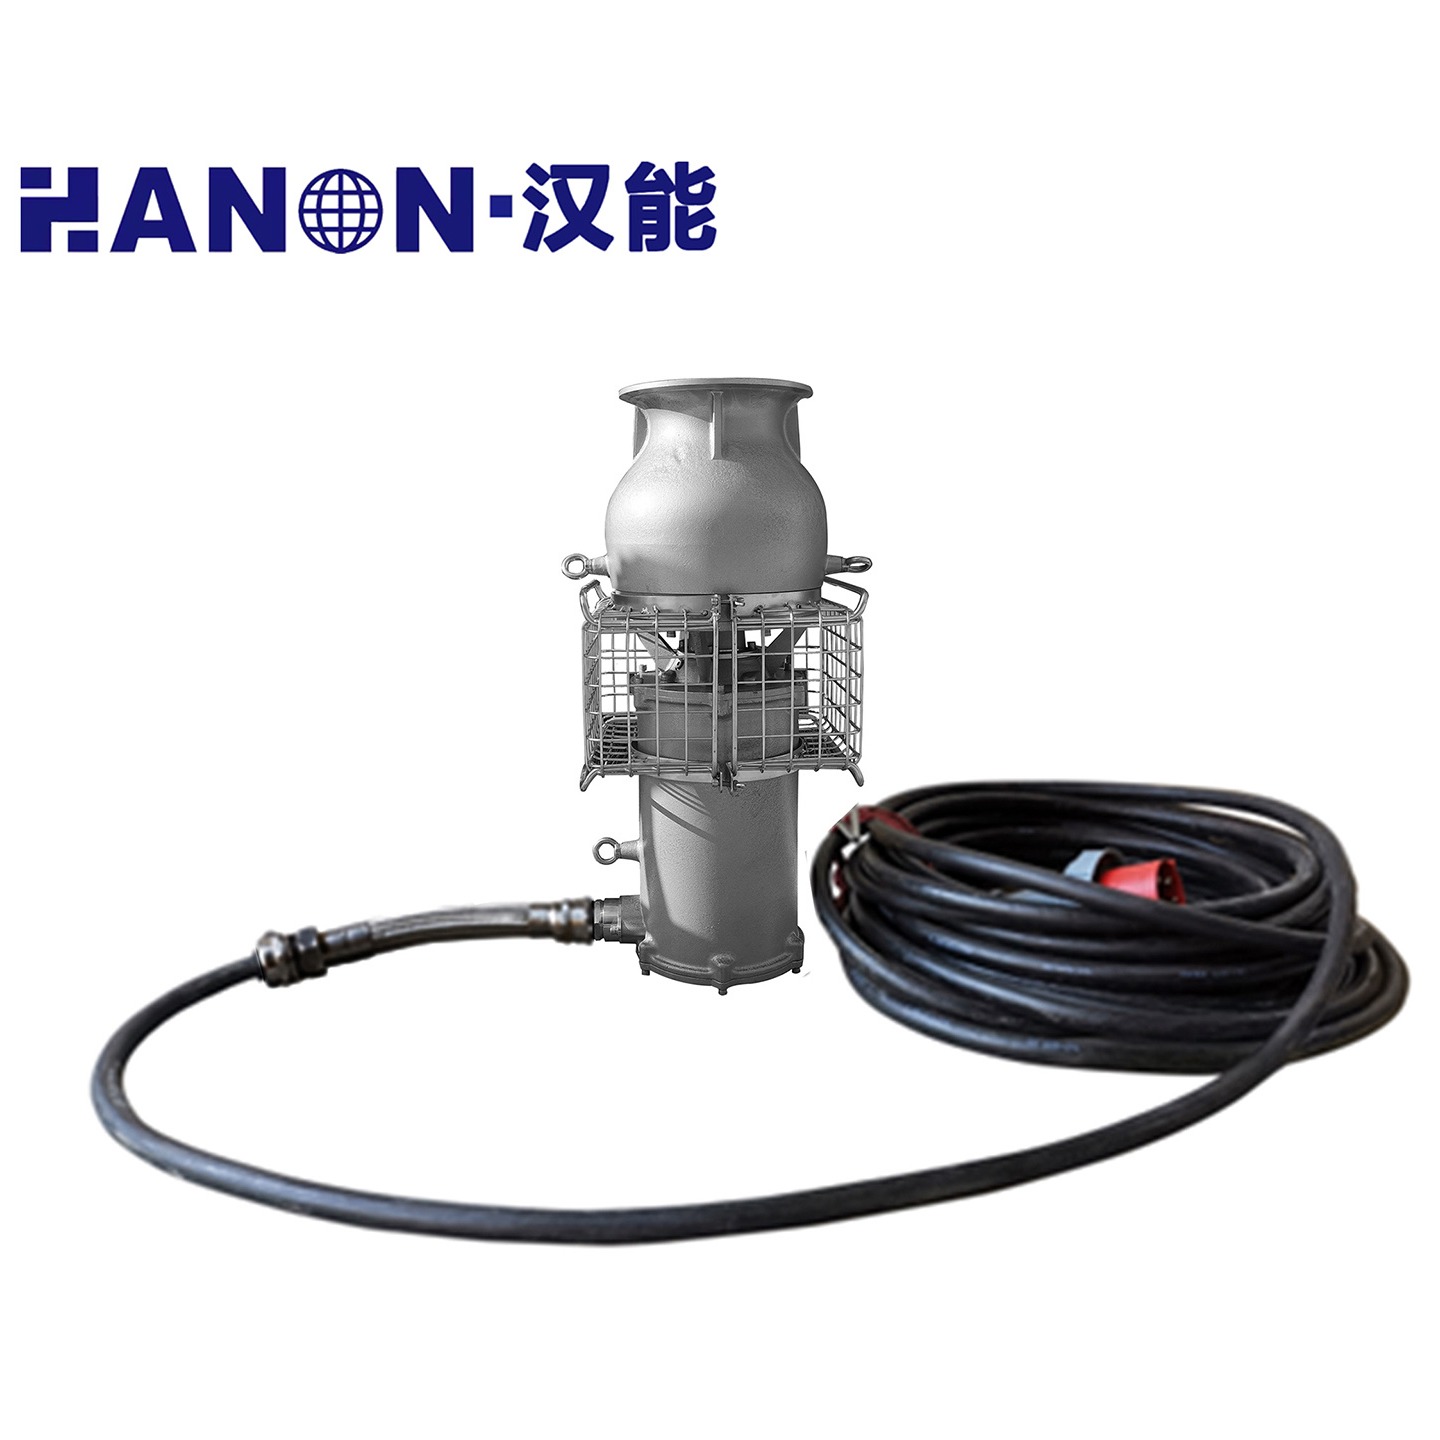 轻潜泵 防汛泵 抽水泵 排水泵 便携式潜水泵 汉能 DQZ系列 批发优惠